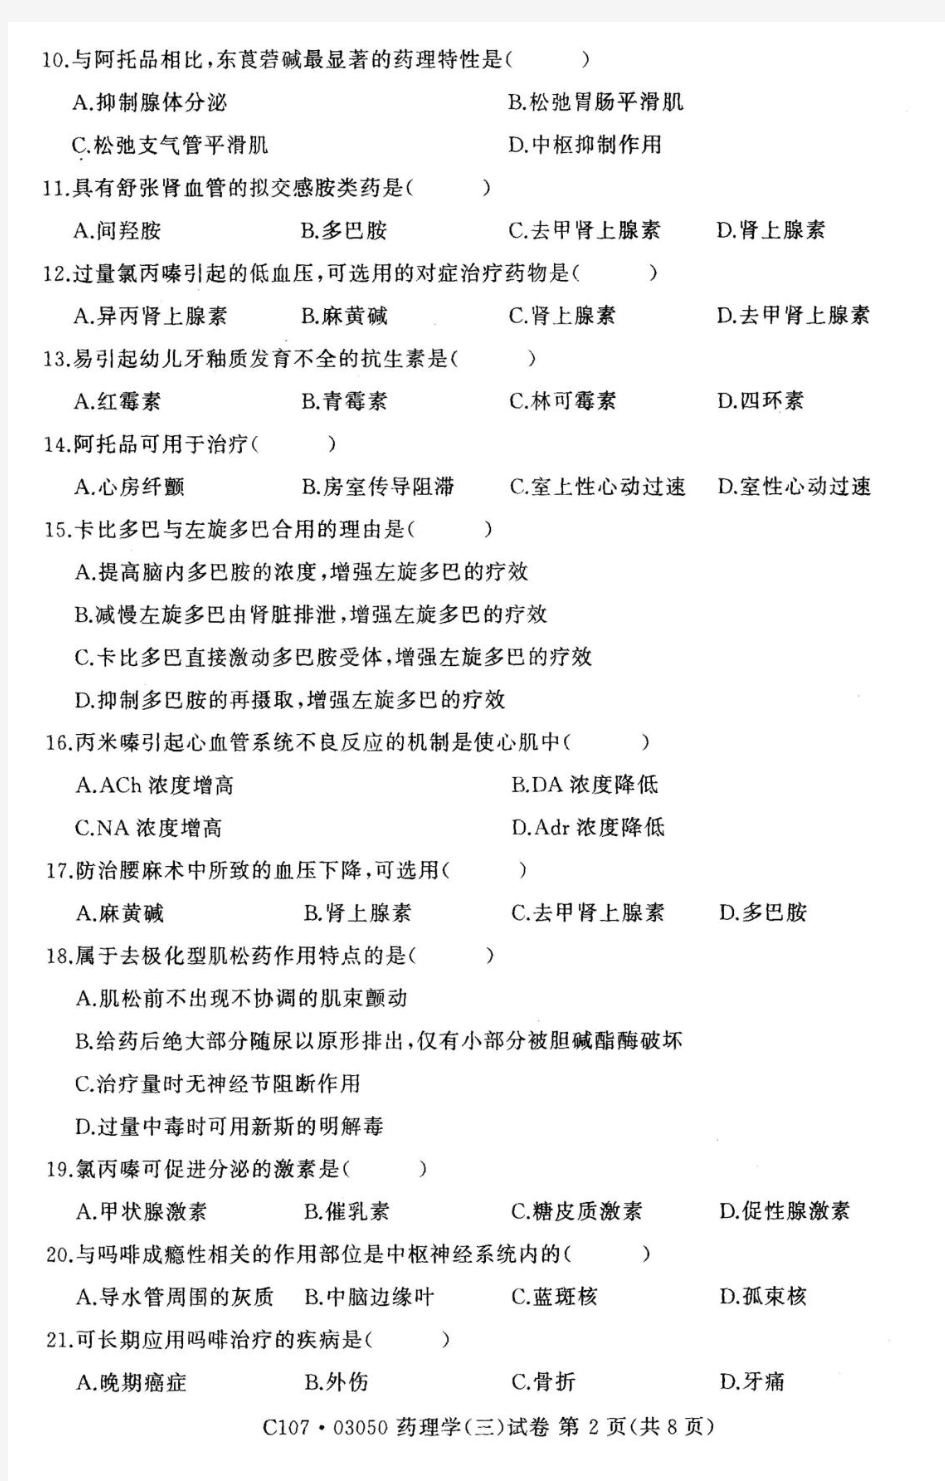 2014年4月江苏自考03050药理学(三)真题试卷